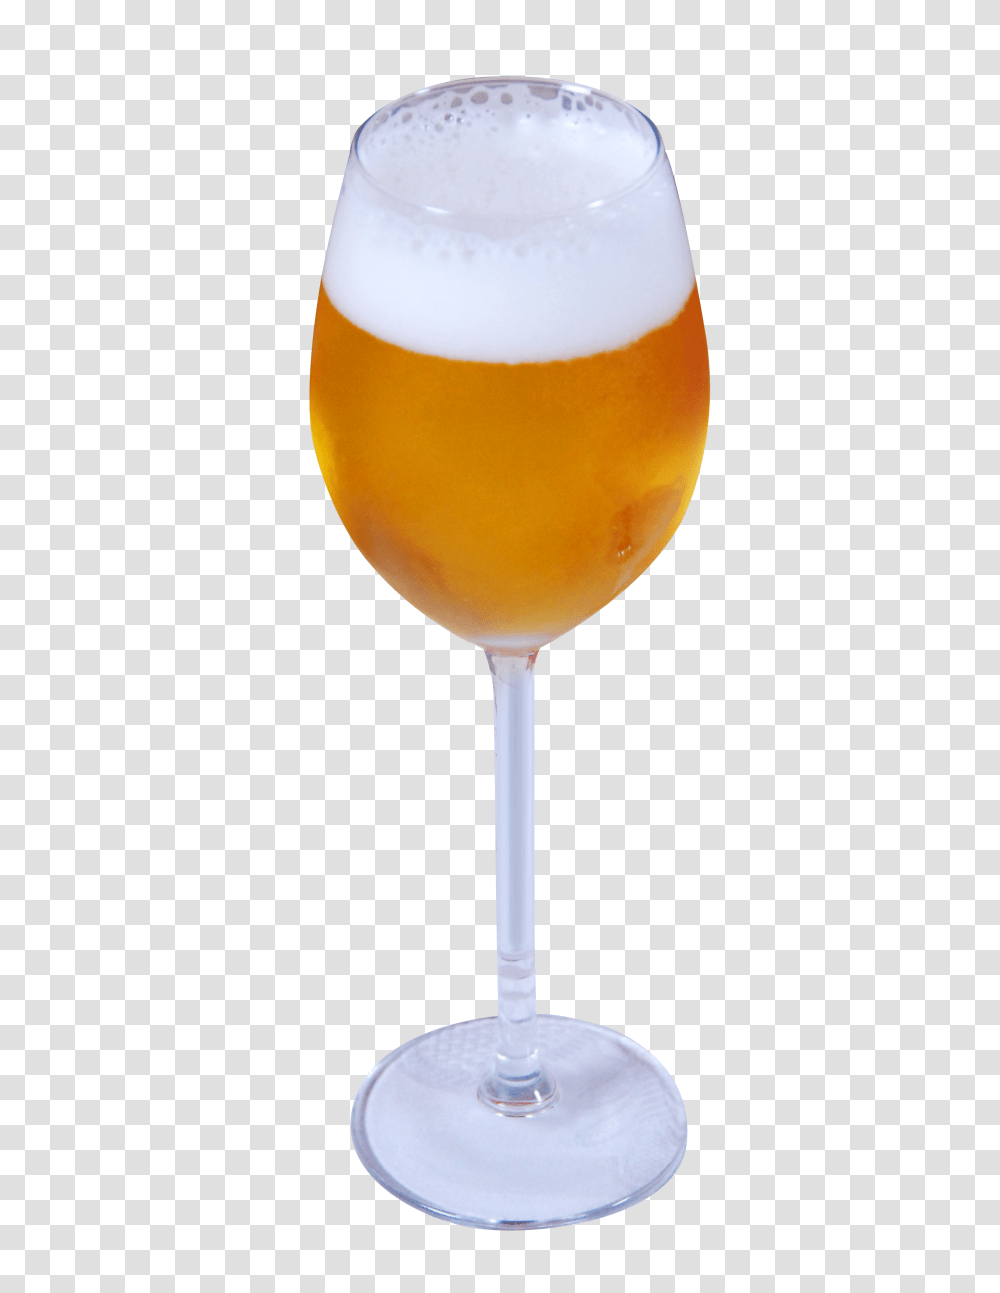 Beer Glass Image 1, Drink, Alcohol, Beverage, Lamp Transparent Png